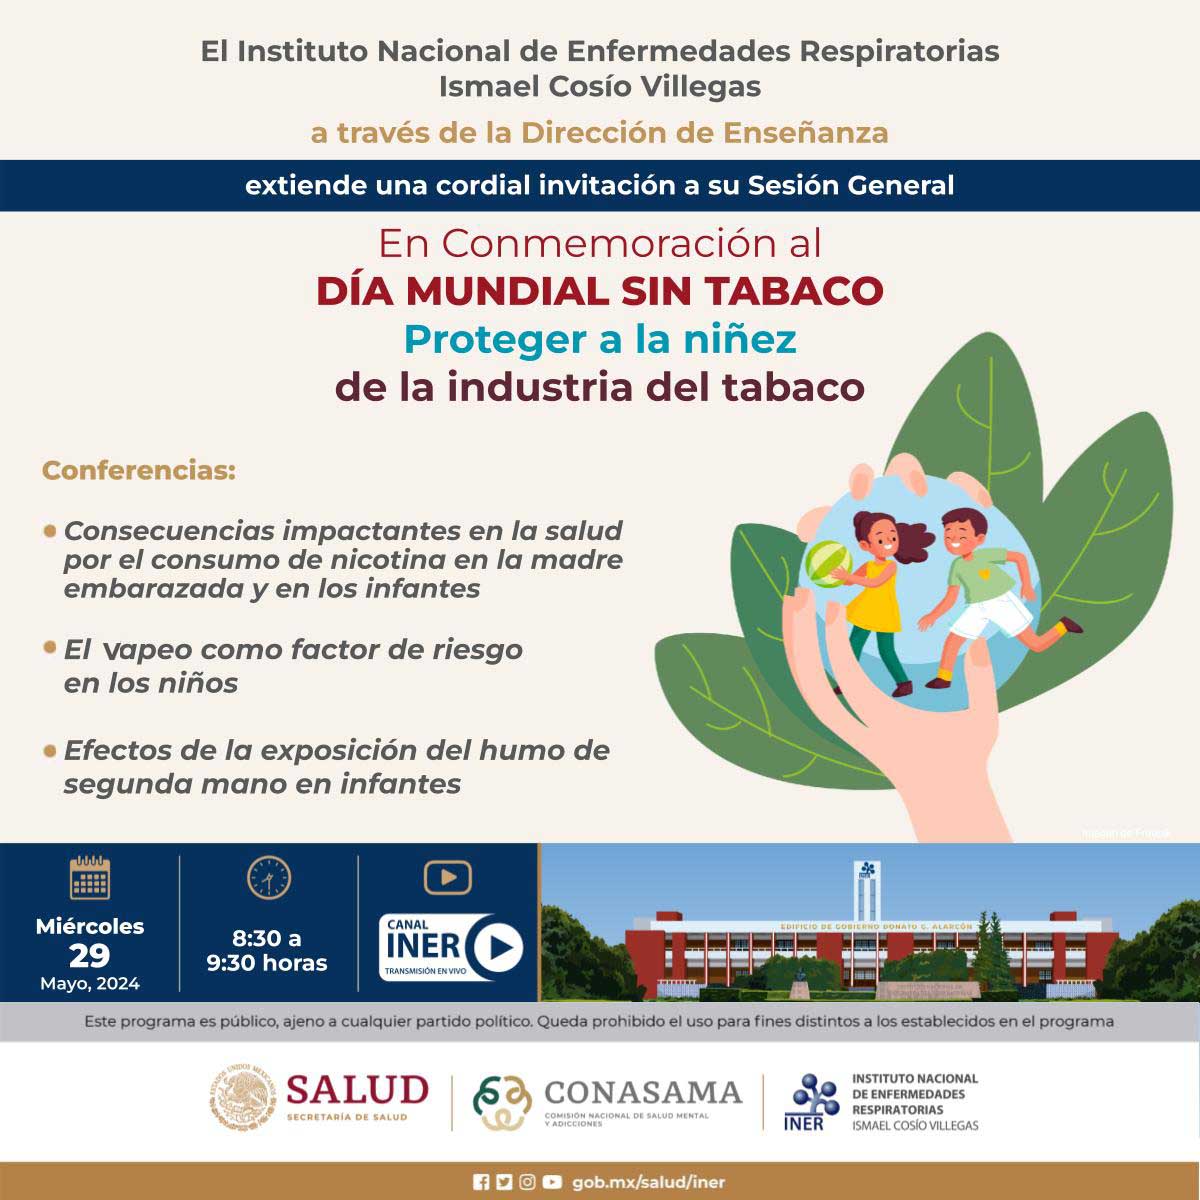 El @RespiraINER invita a la Sesión General EN CONMEMORACIÓN AL DÍA MUNDIAL SIN TABACO: Proteger a la niñez de la industria del tabaco

🗓️ Miércoles 29 de mayo de 2024, 08:30 horas.
✅ Liga de visualización:
youtube.com/watch?v=uG2uSV…

#INER #EspecialistasINER #DíaMundialSinTabaco